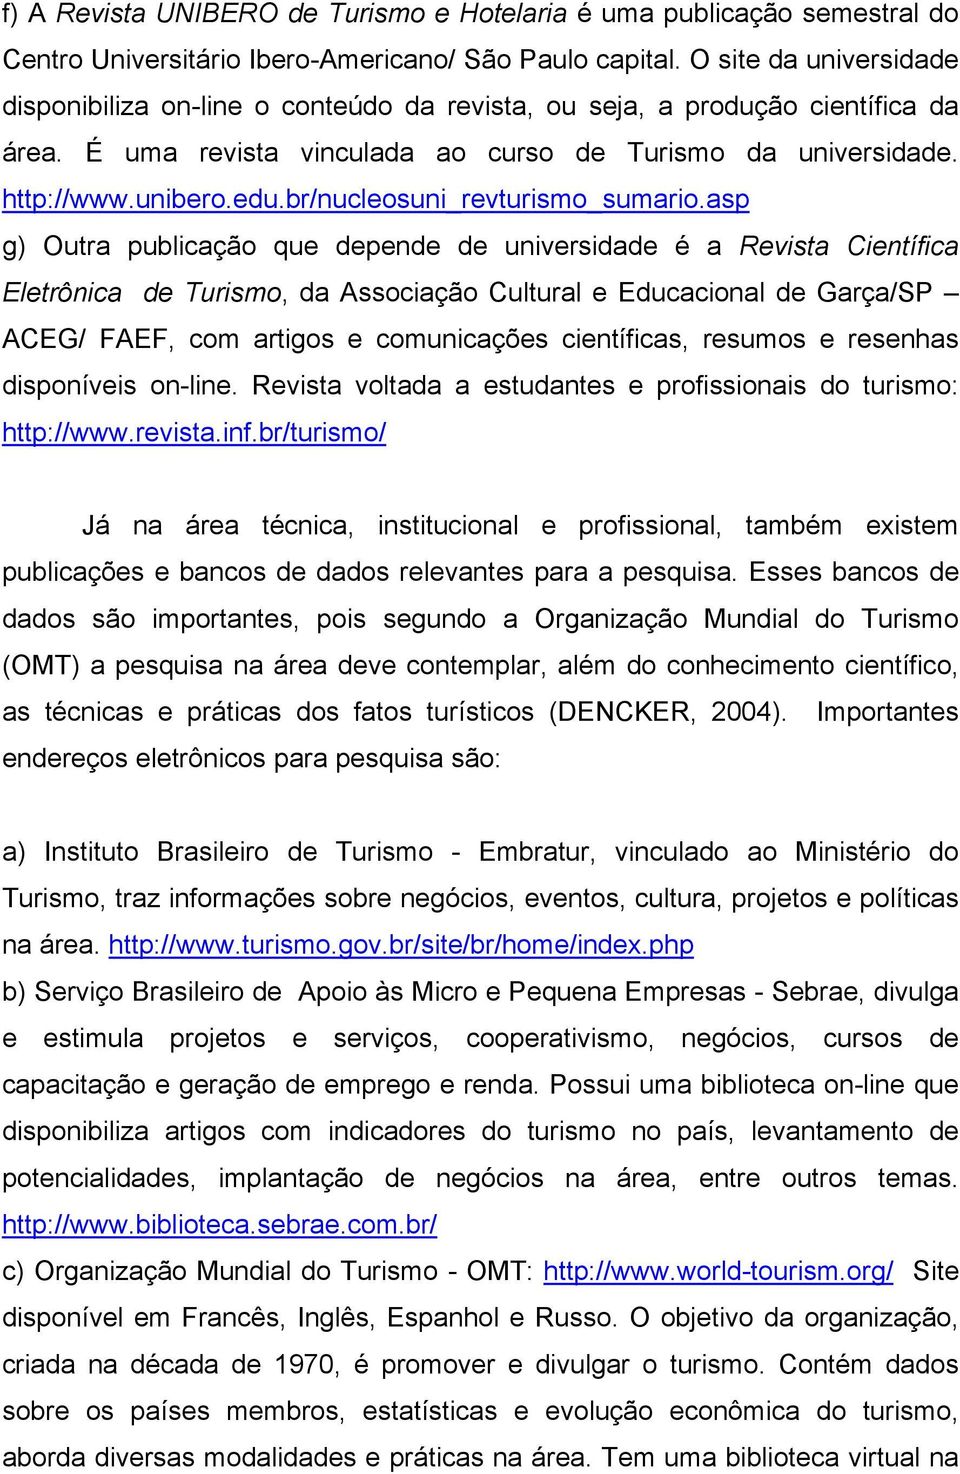 br/nucleosuni_revturismo_sumario.